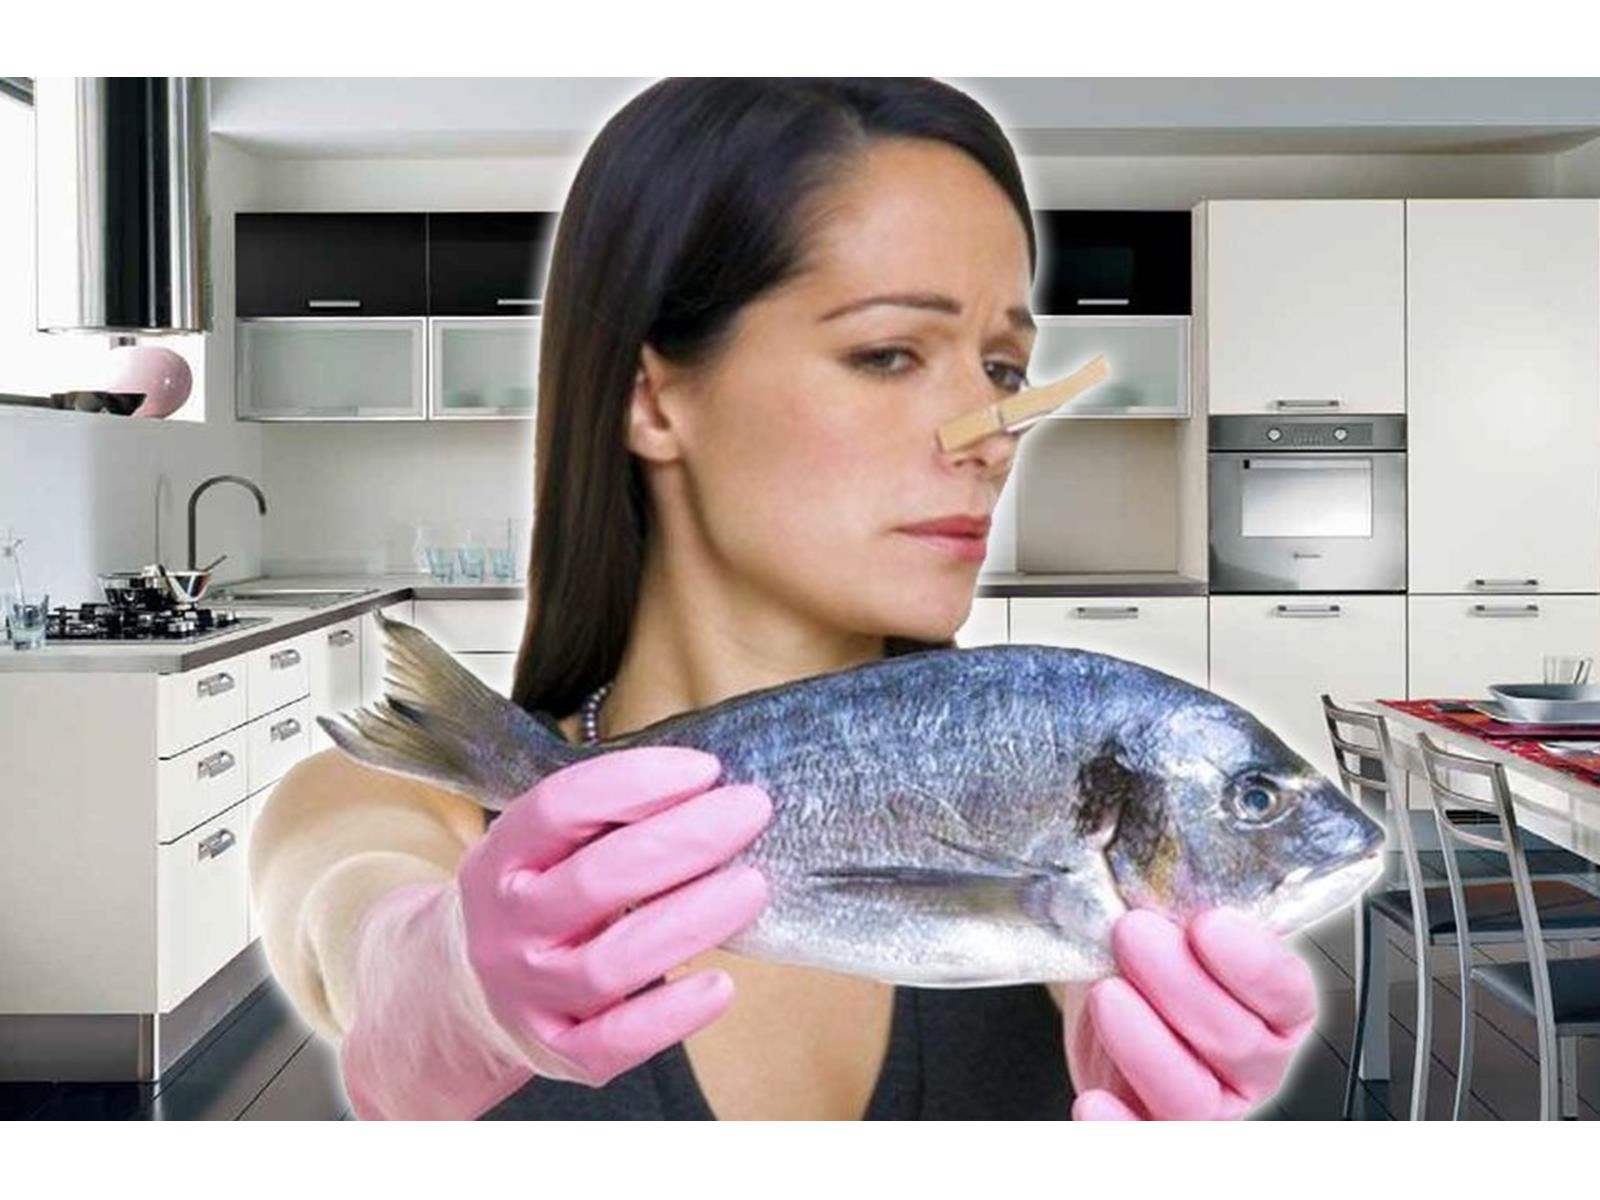 Elimina el olor a pescado de la cocina | Diario 2001